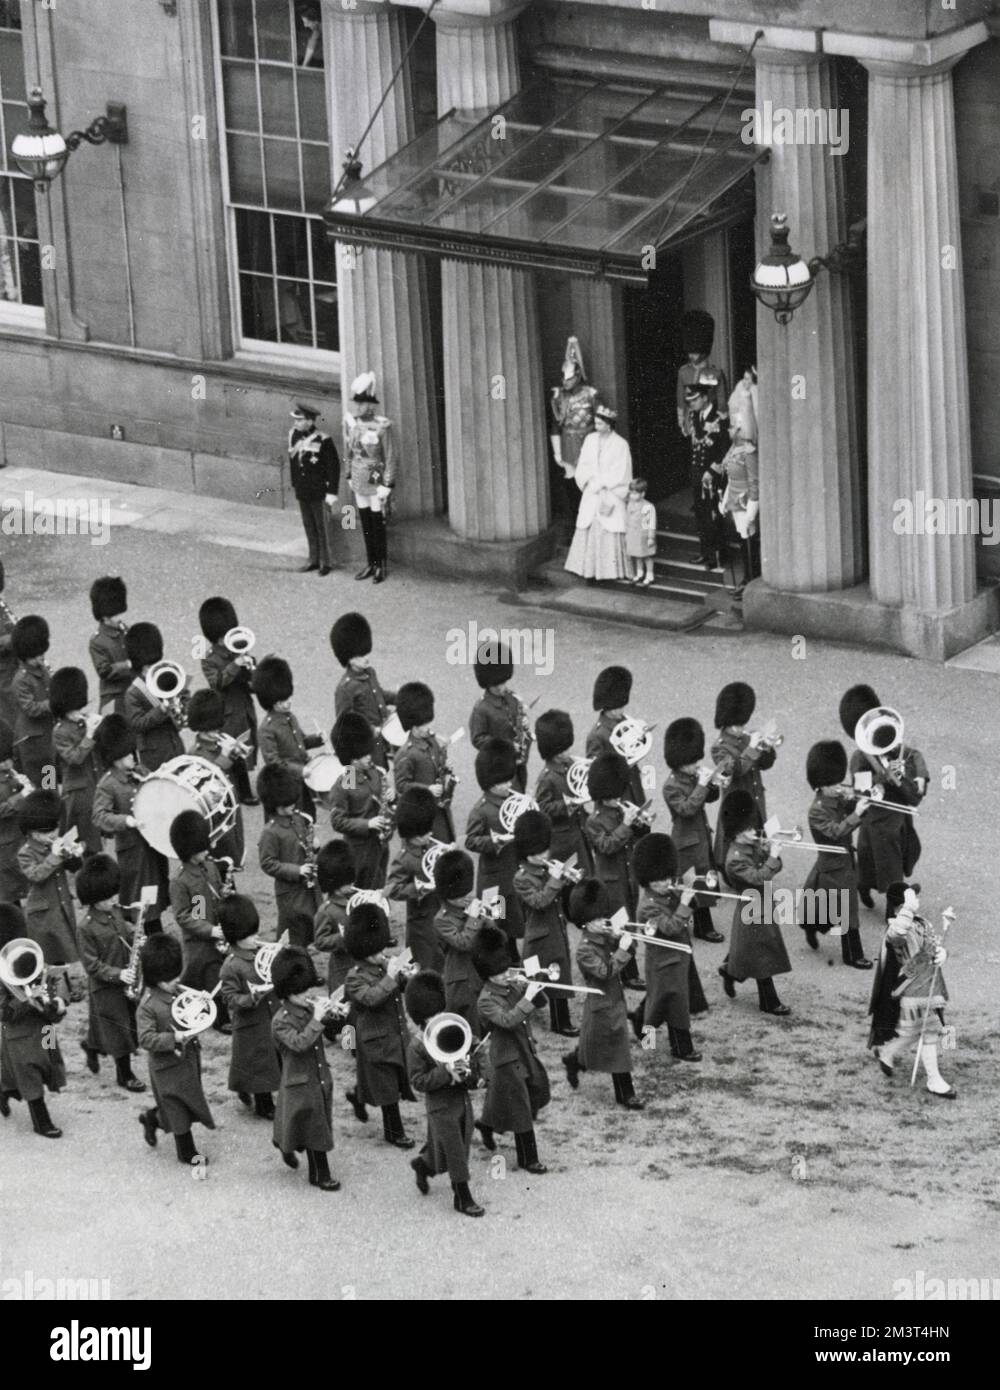 Scena nel piazzale di Buckingham Palace che mostra il Principe Carlo (Re Carlo III) al fianco di sua madre, la Regina Elisabetta II, mentre guardano un passato di marcia della band Guards, Al ritorno di sua Maestà e del Duca di Edimburgo al Palazzo dopo l'apertura dello Stato del Parlamento nel 1952. Foto Stock